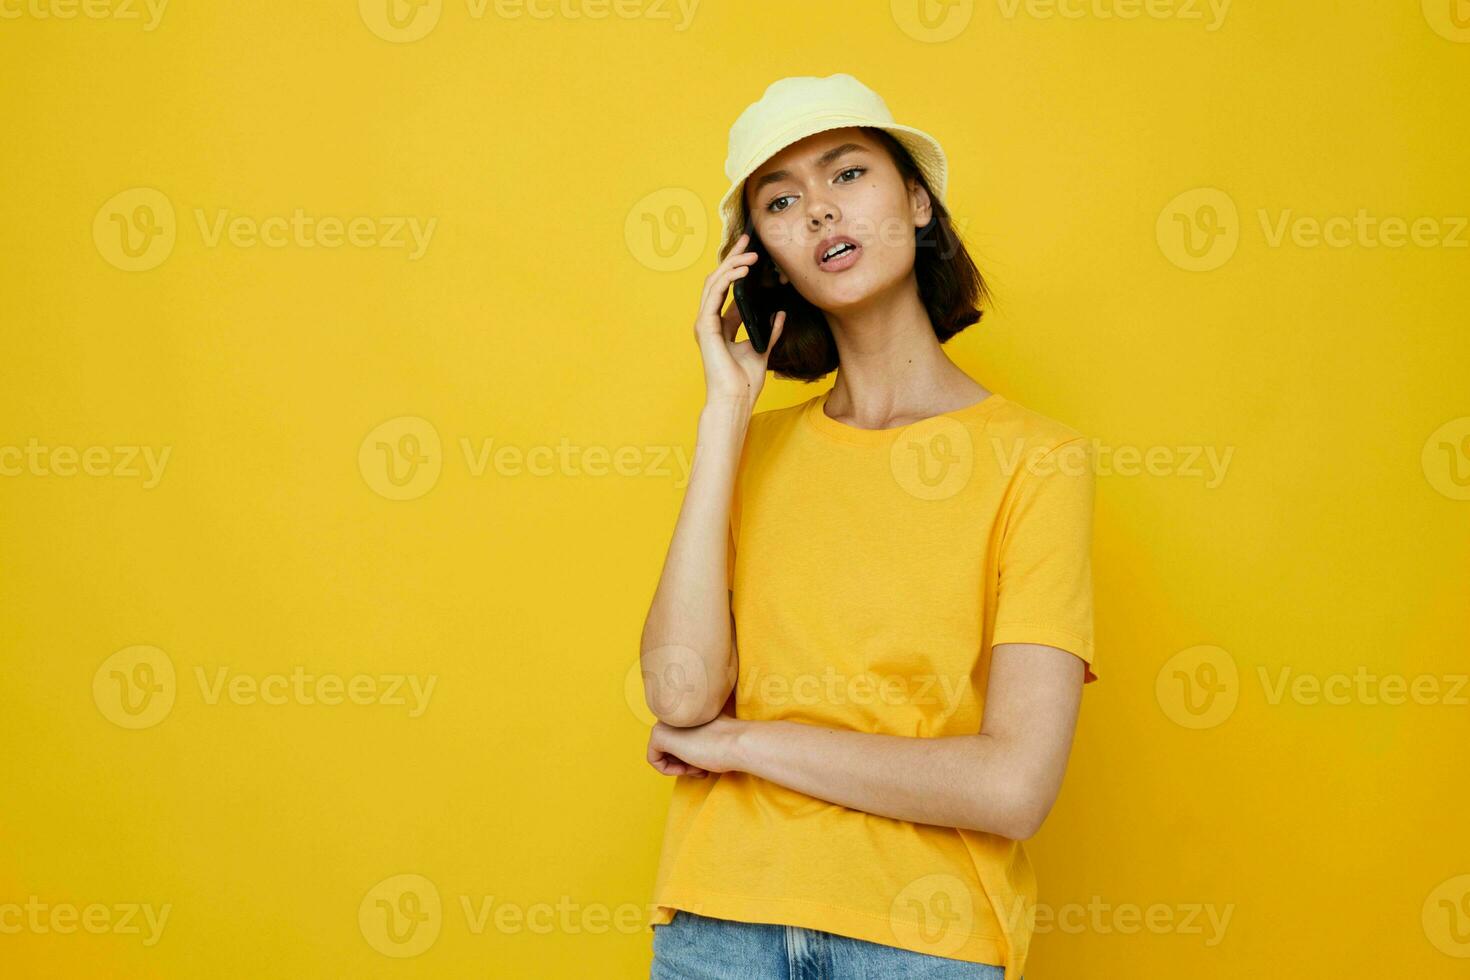 optimista joven mujer amarillo camiseta y sombrero verano estilo con teléfono estilo de vida inalterado foto